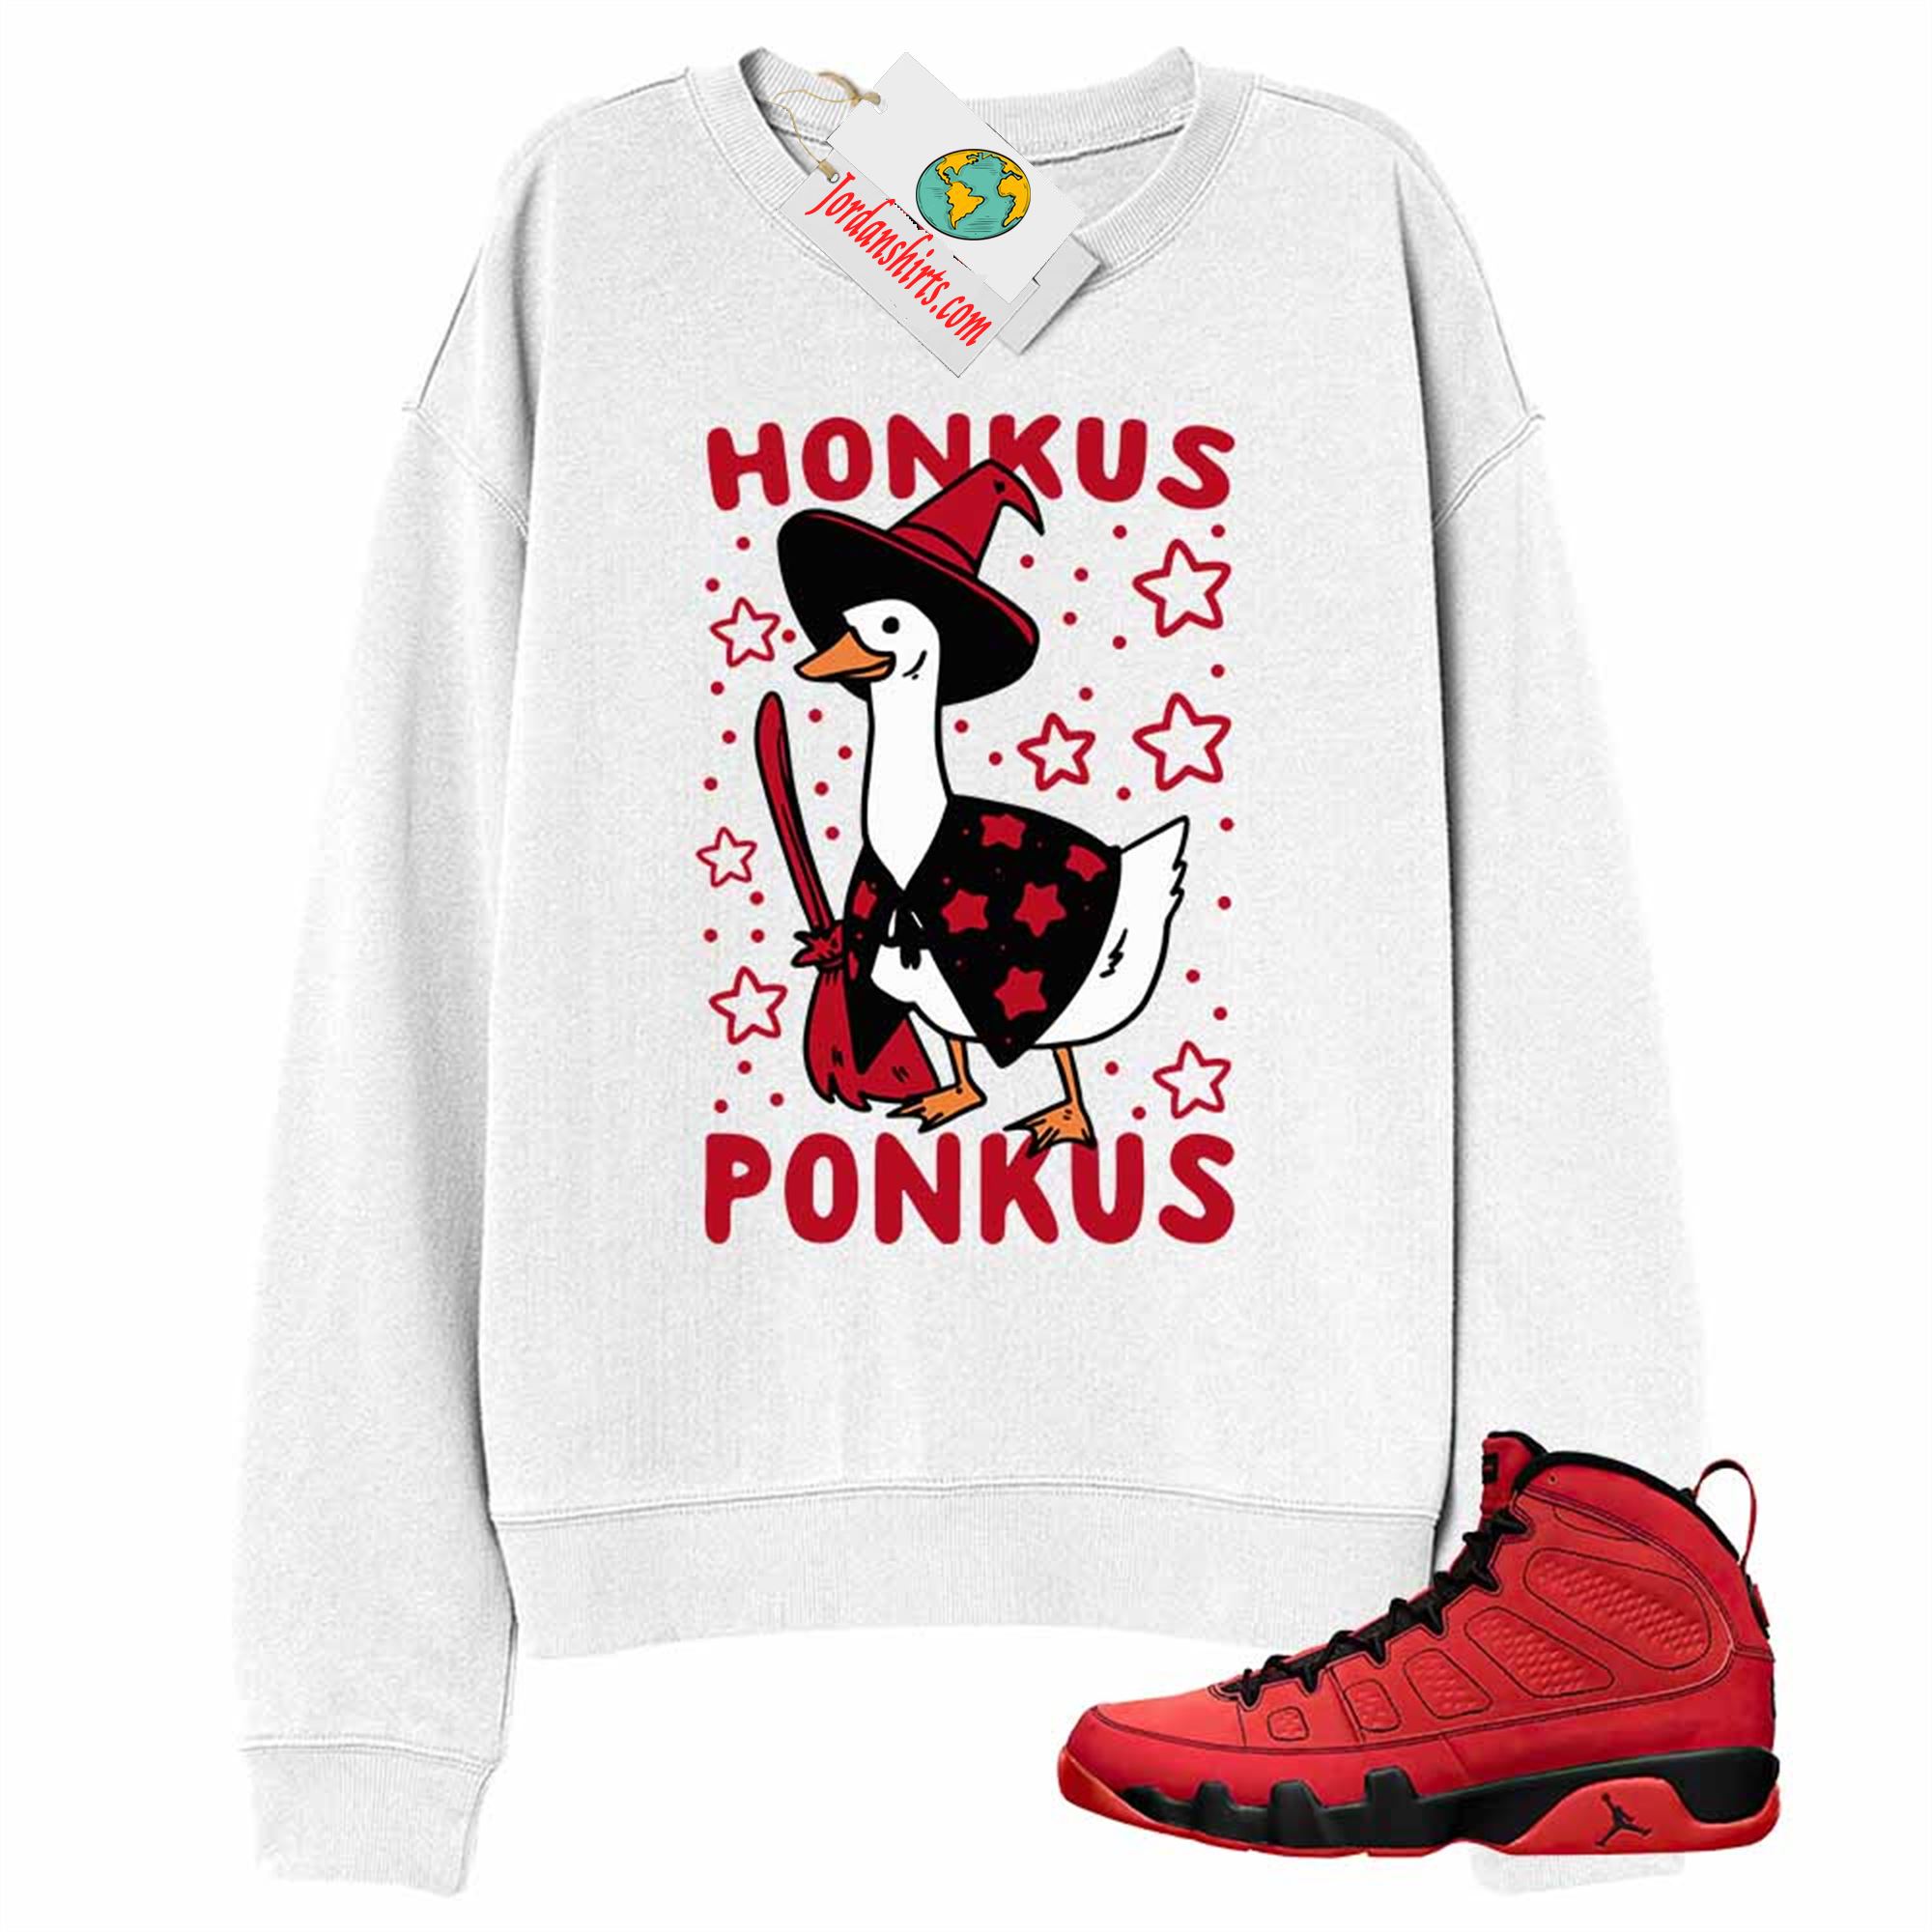 Jordan 9 Sweatshirt, Witches Duck Honkus Ponkus White Sweatshirt Air Jordan 9 Chile Red 9s Size Up To 5xl